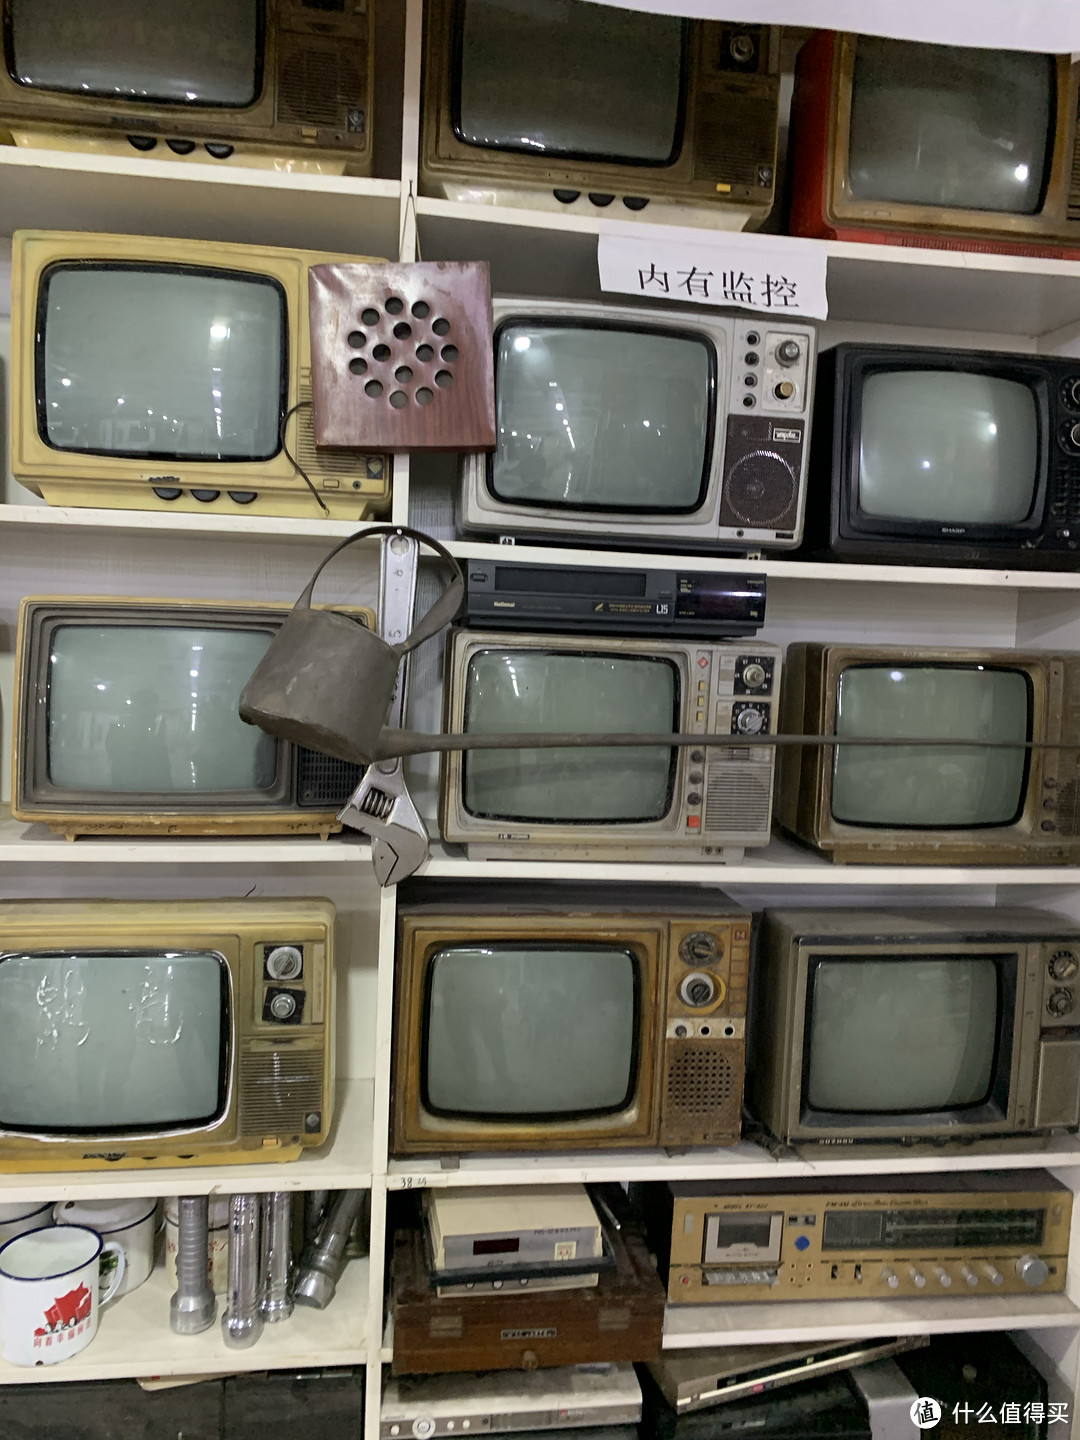 老古董电视机，用来拍照复古风很有感觉